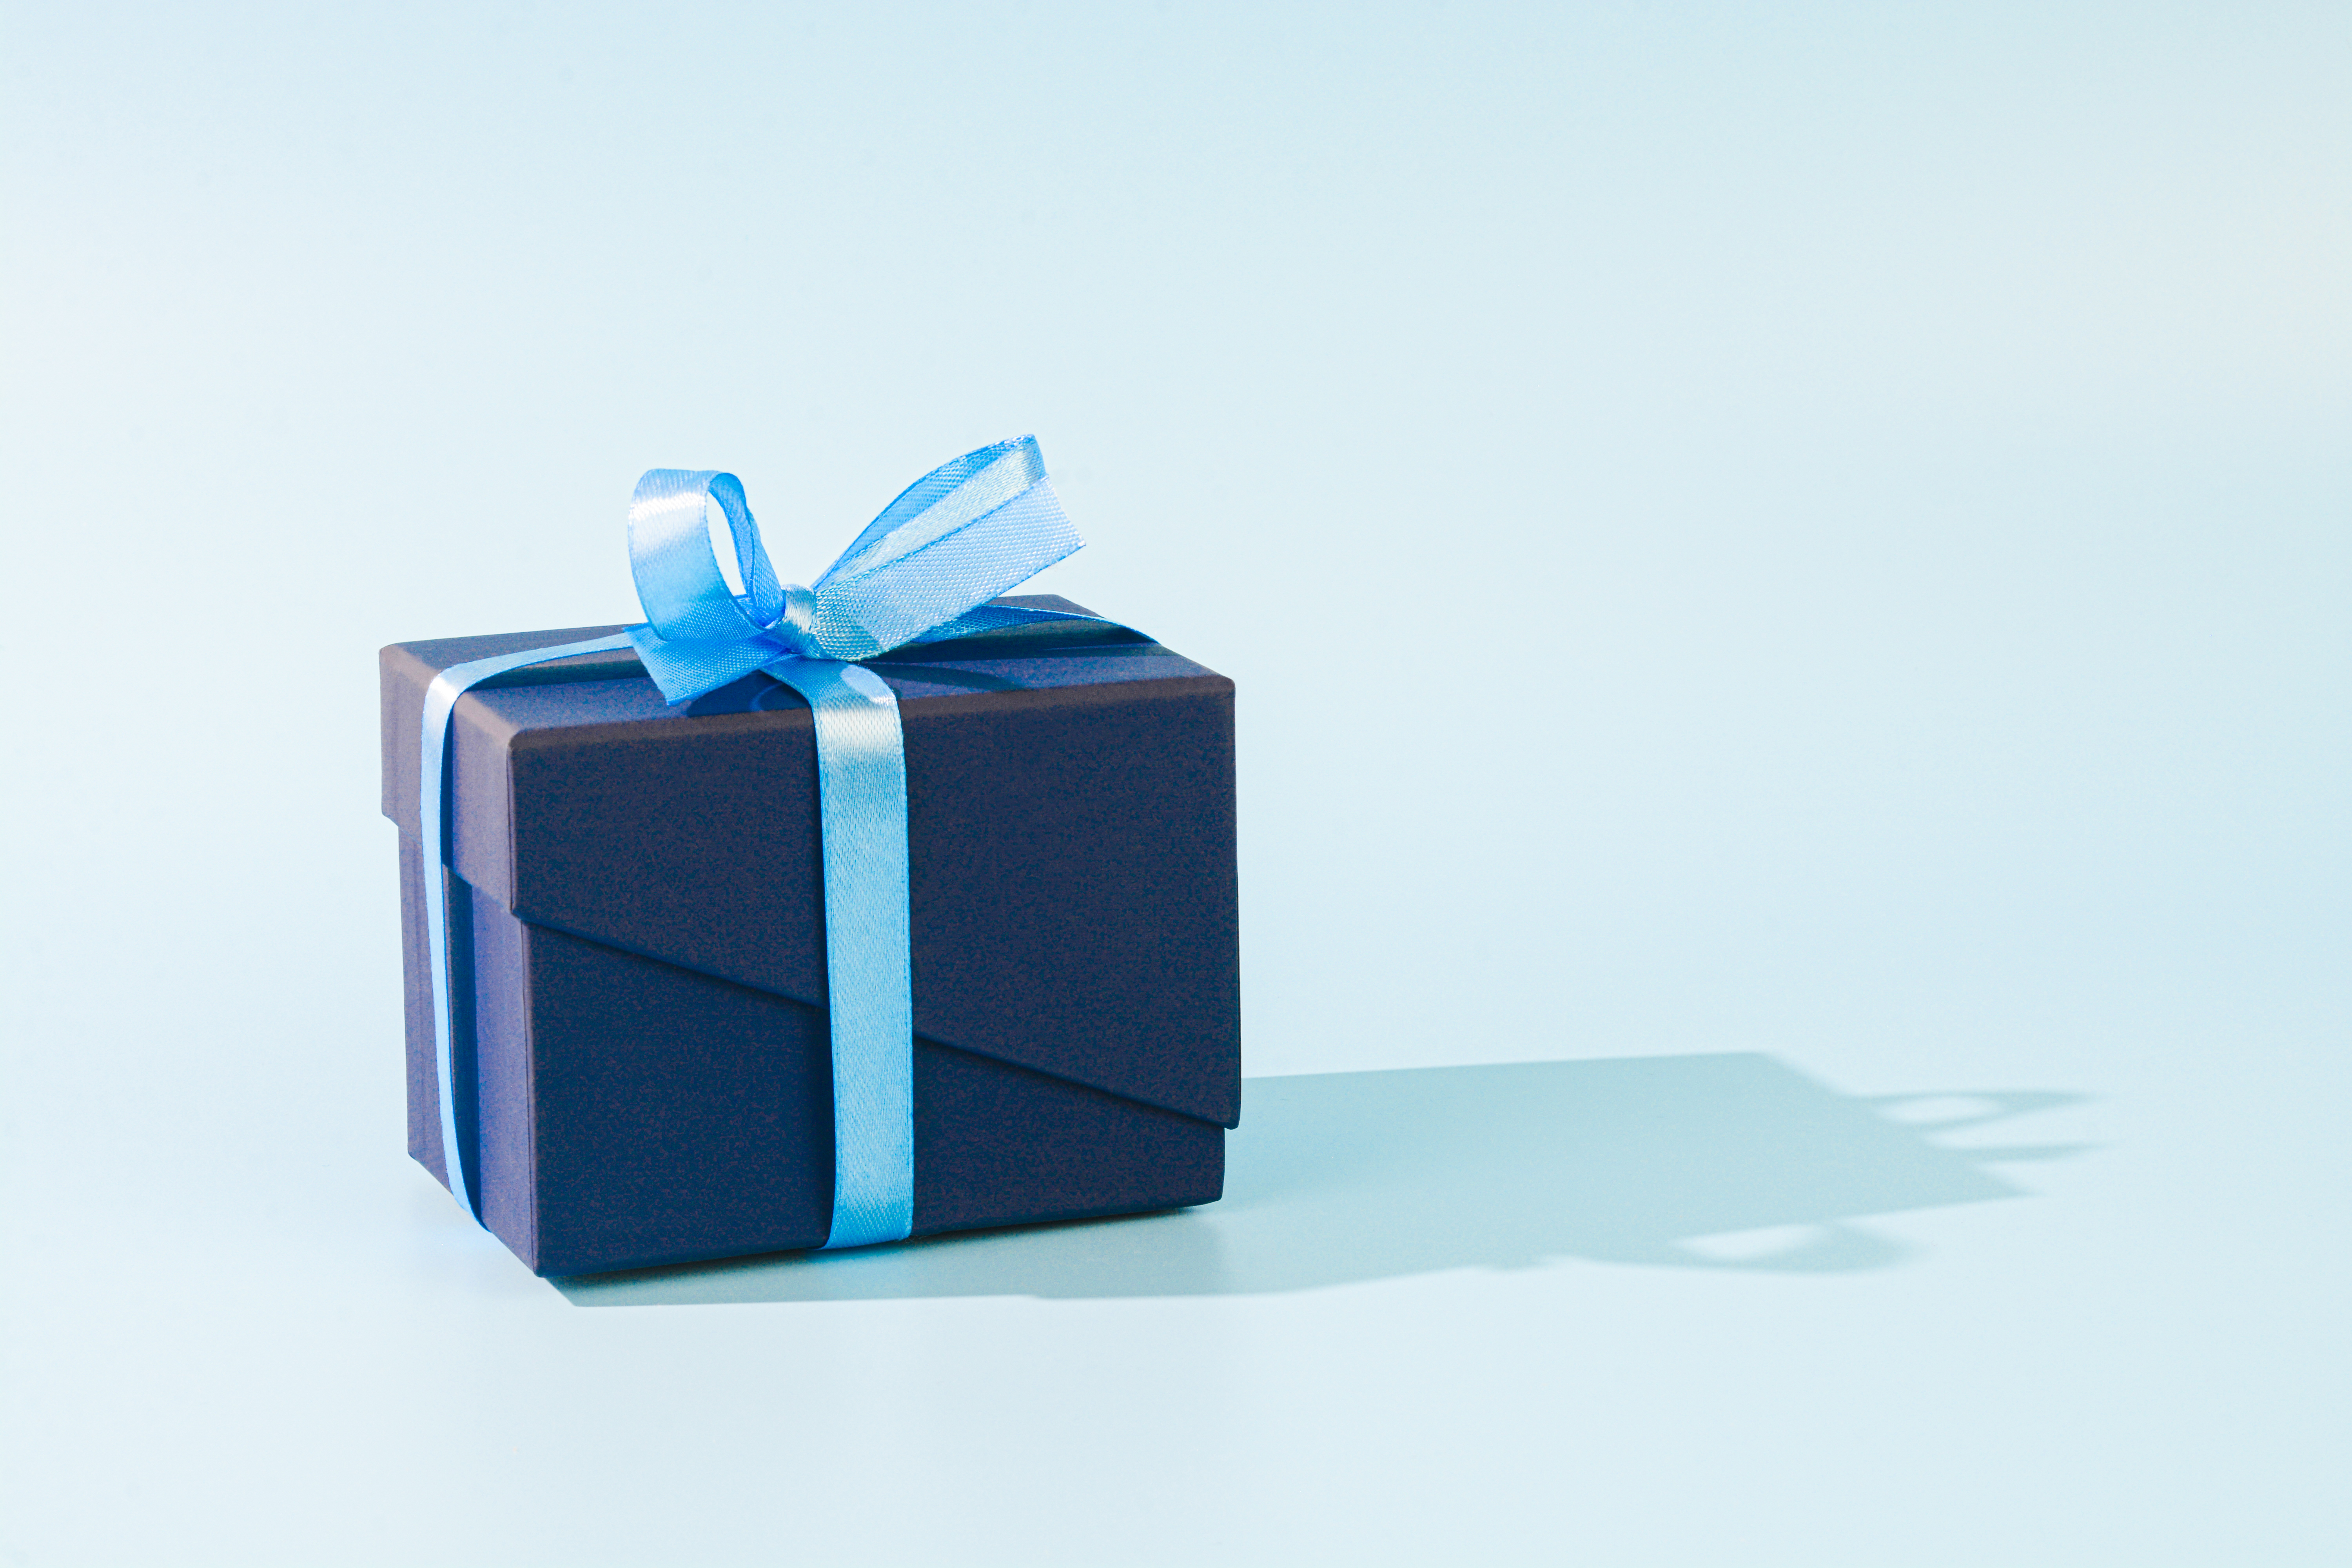 Un cadeau emballé avec du papier bleu foncé et un ruban bleu clair | Source : Getty Images